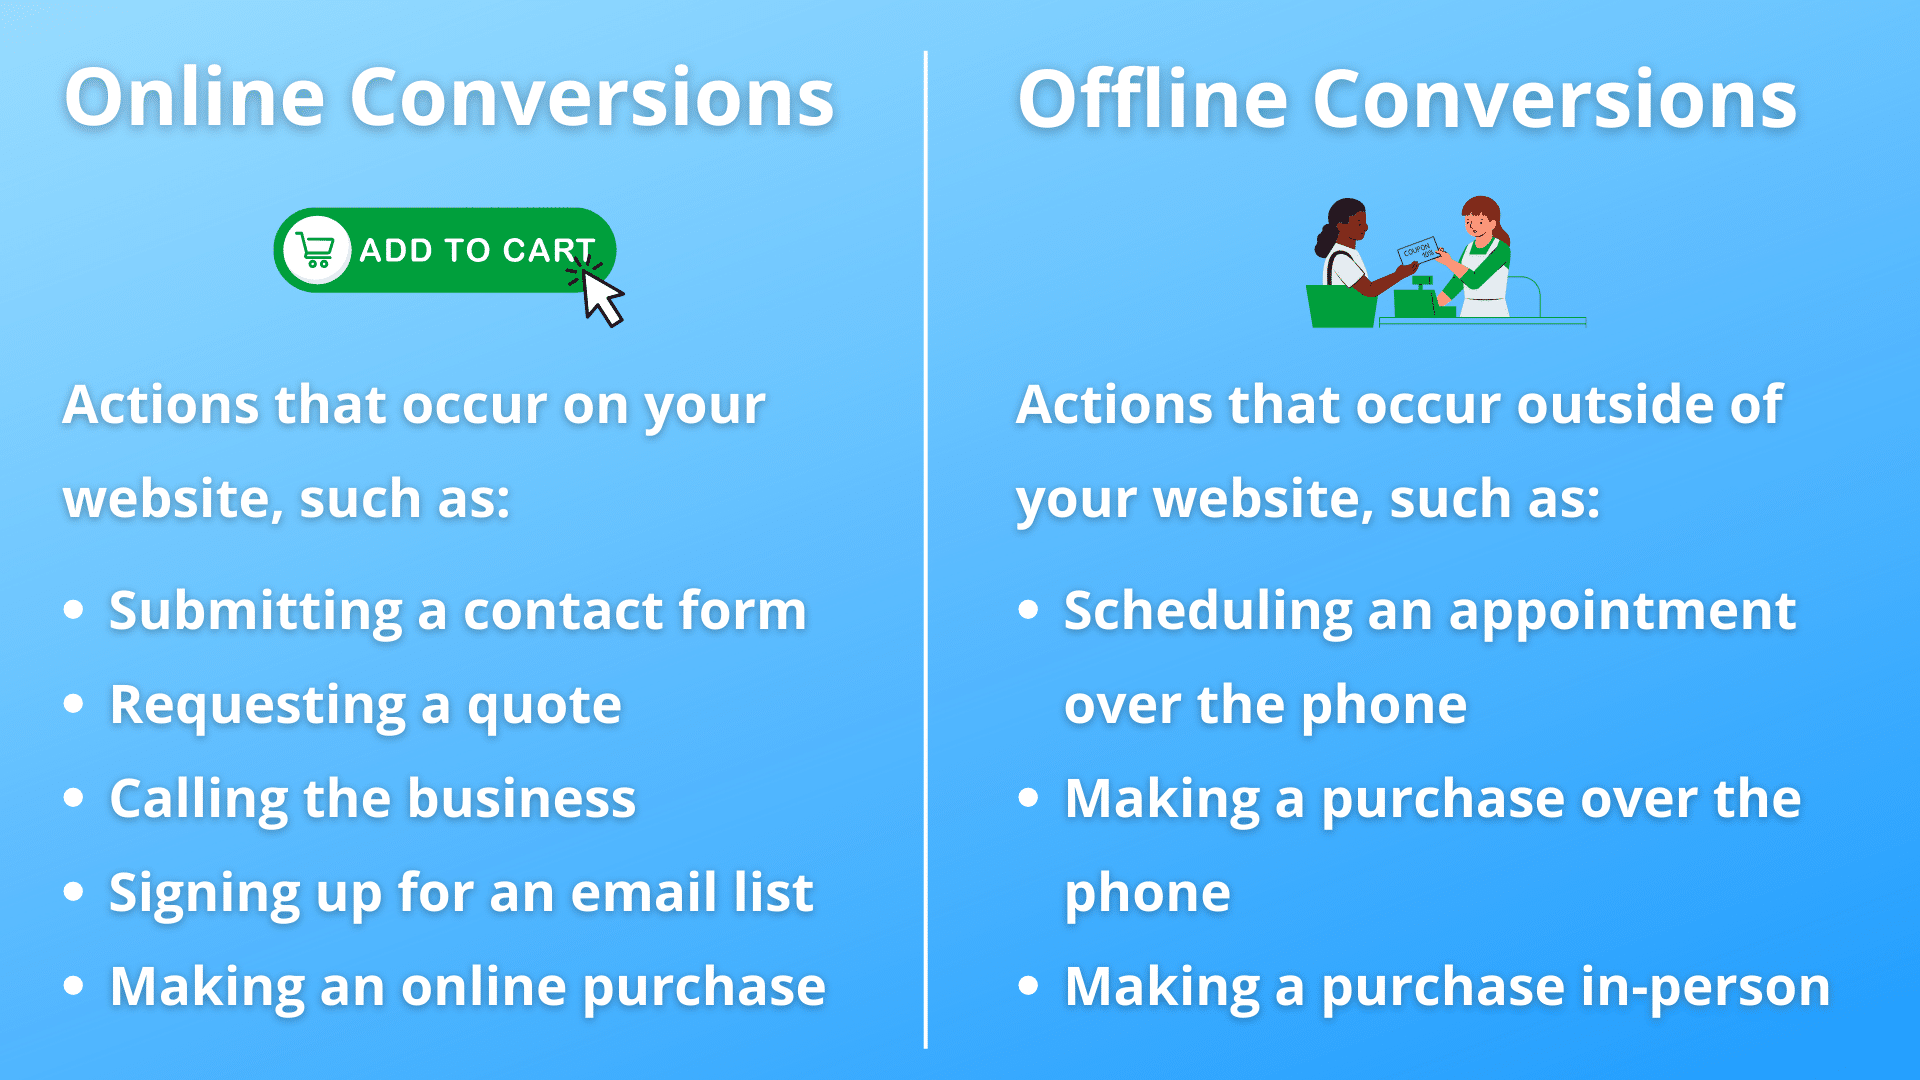 Online vs. Offline Conversions